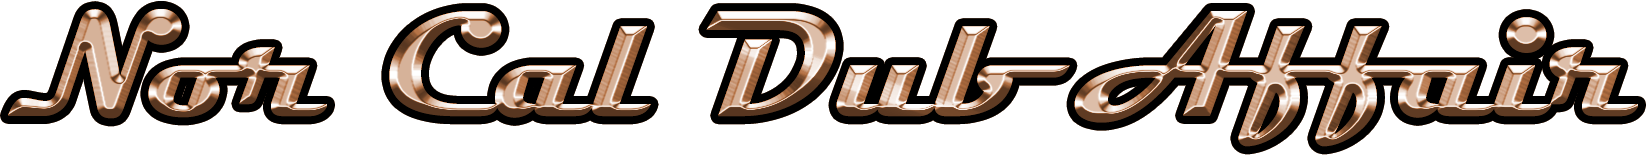 Dub Affair Logo